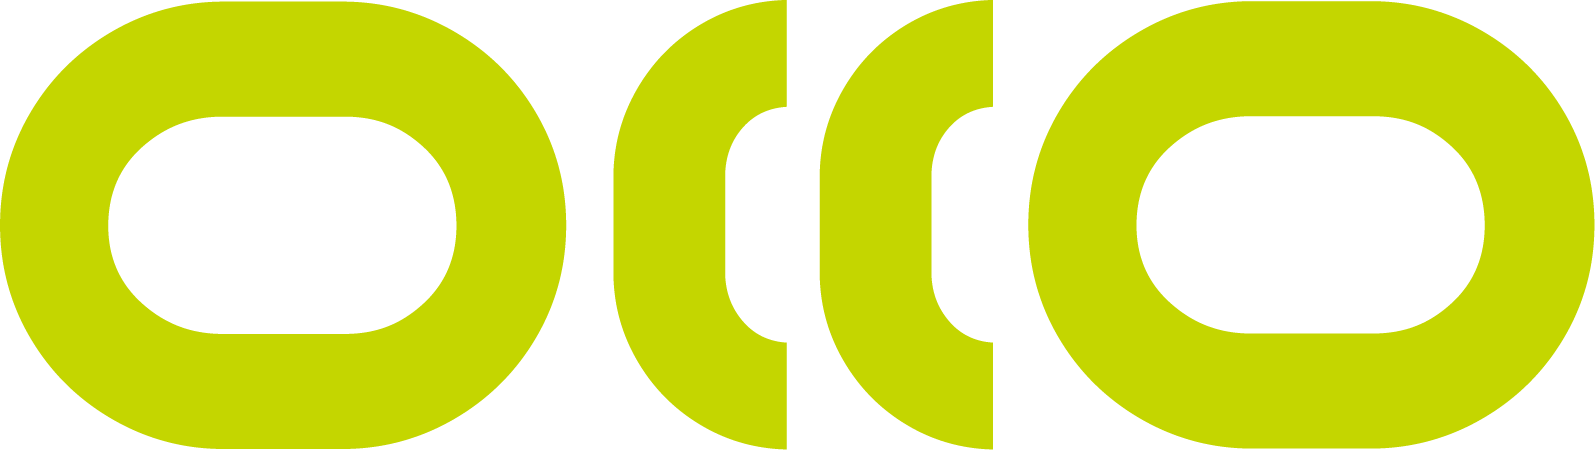 OCCO logo